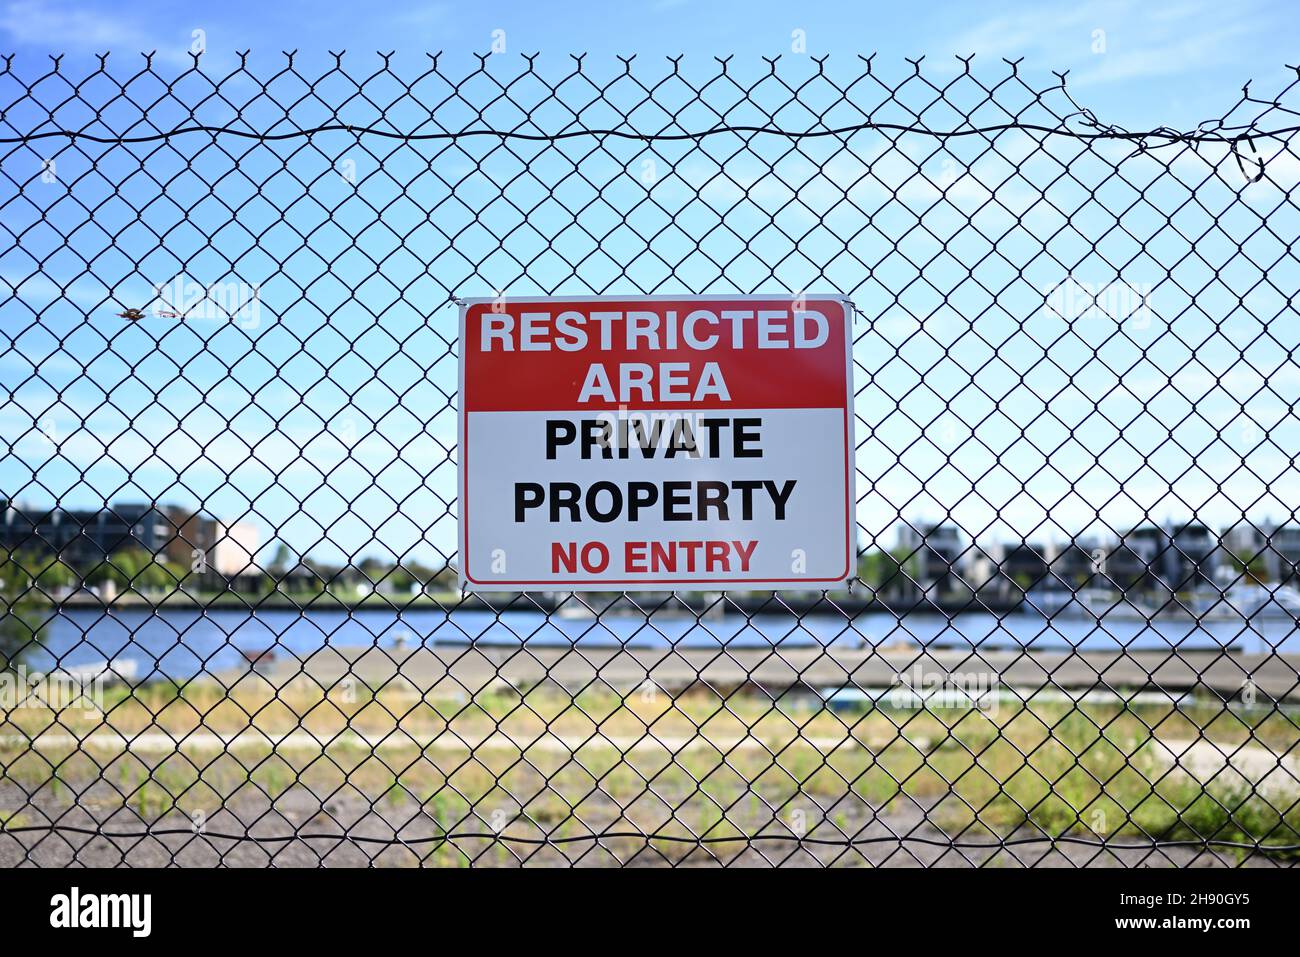 Ein Schild mit beschränkter Fläche, das signalisiert, dass sich hinter dem Zaun Privateigentum befindet und dass kein Zutritt erlaubt ist, auf einem Zaun Stockfoto